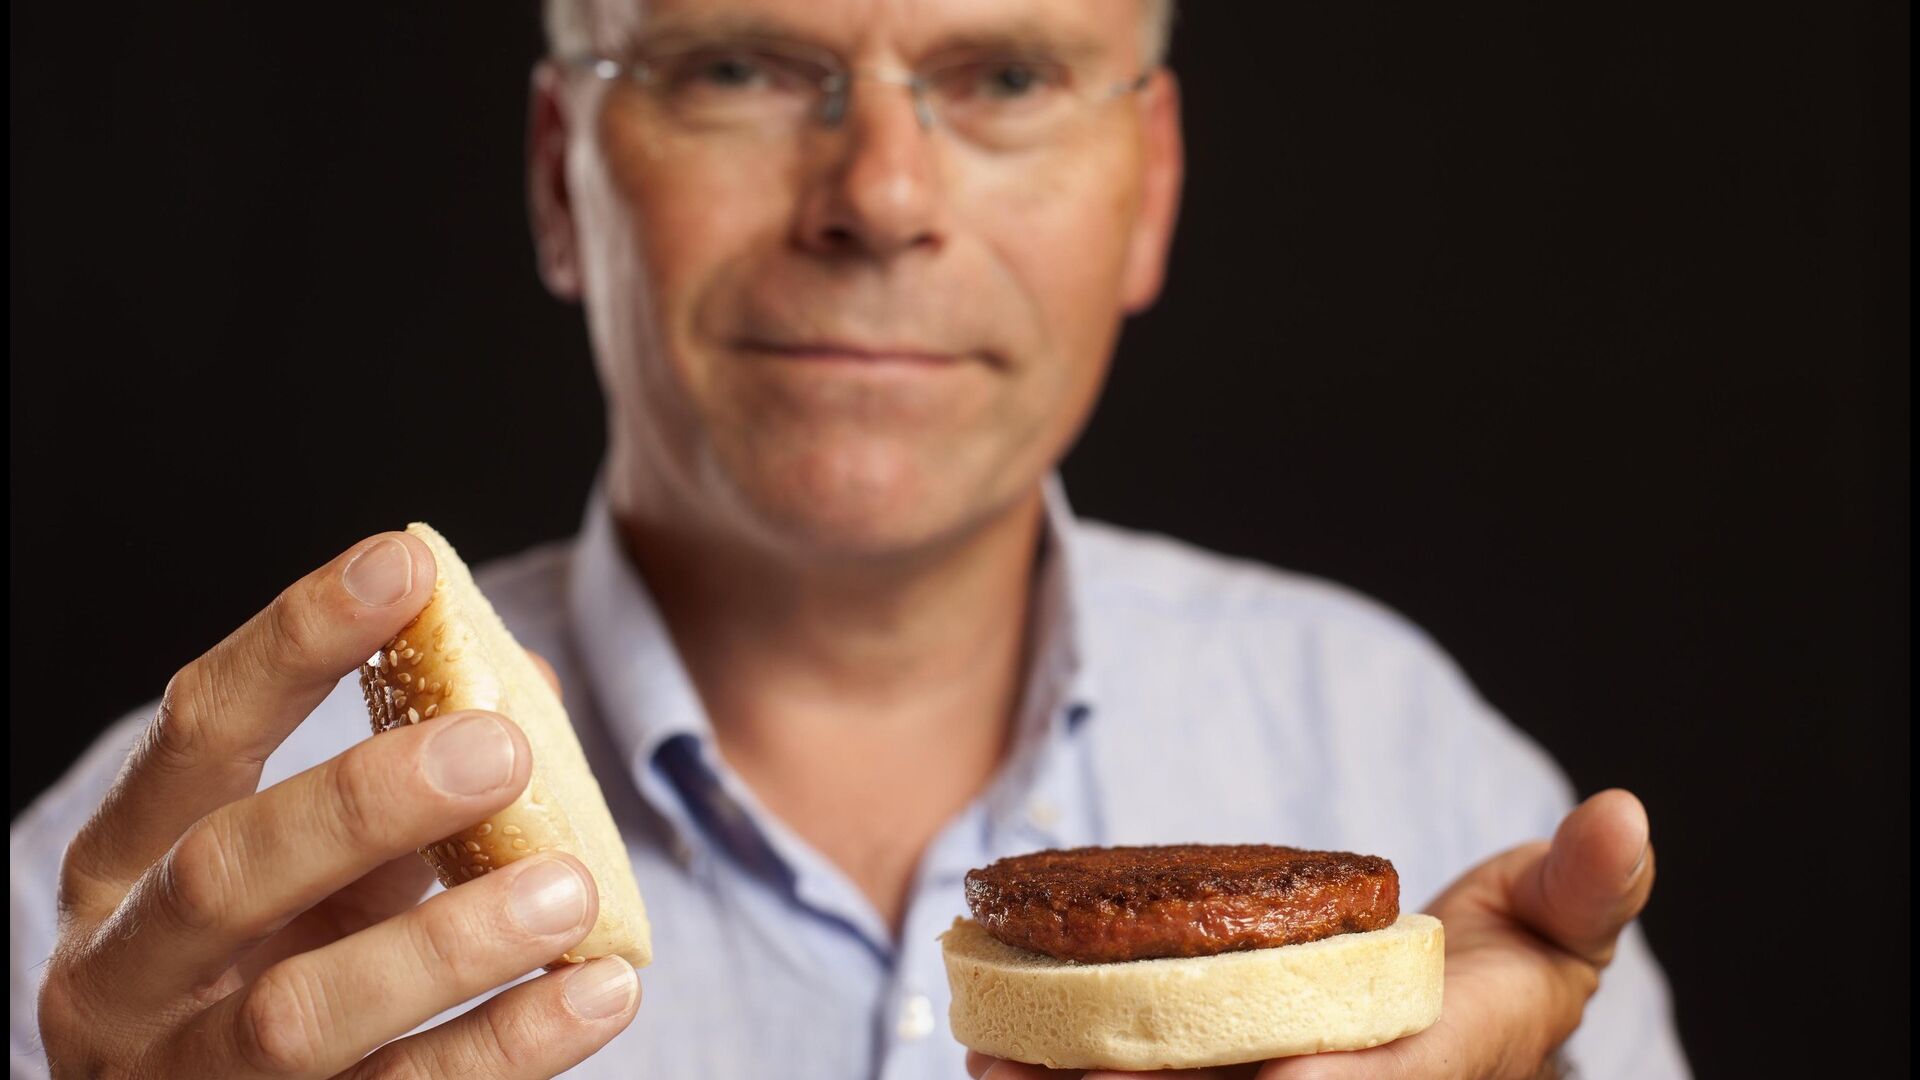 Carne coltivata: Mark Post, il “padre” della carne coltivata, svela al mondo il primo hamburger prodotto attraverso l'agricoltura cellulare